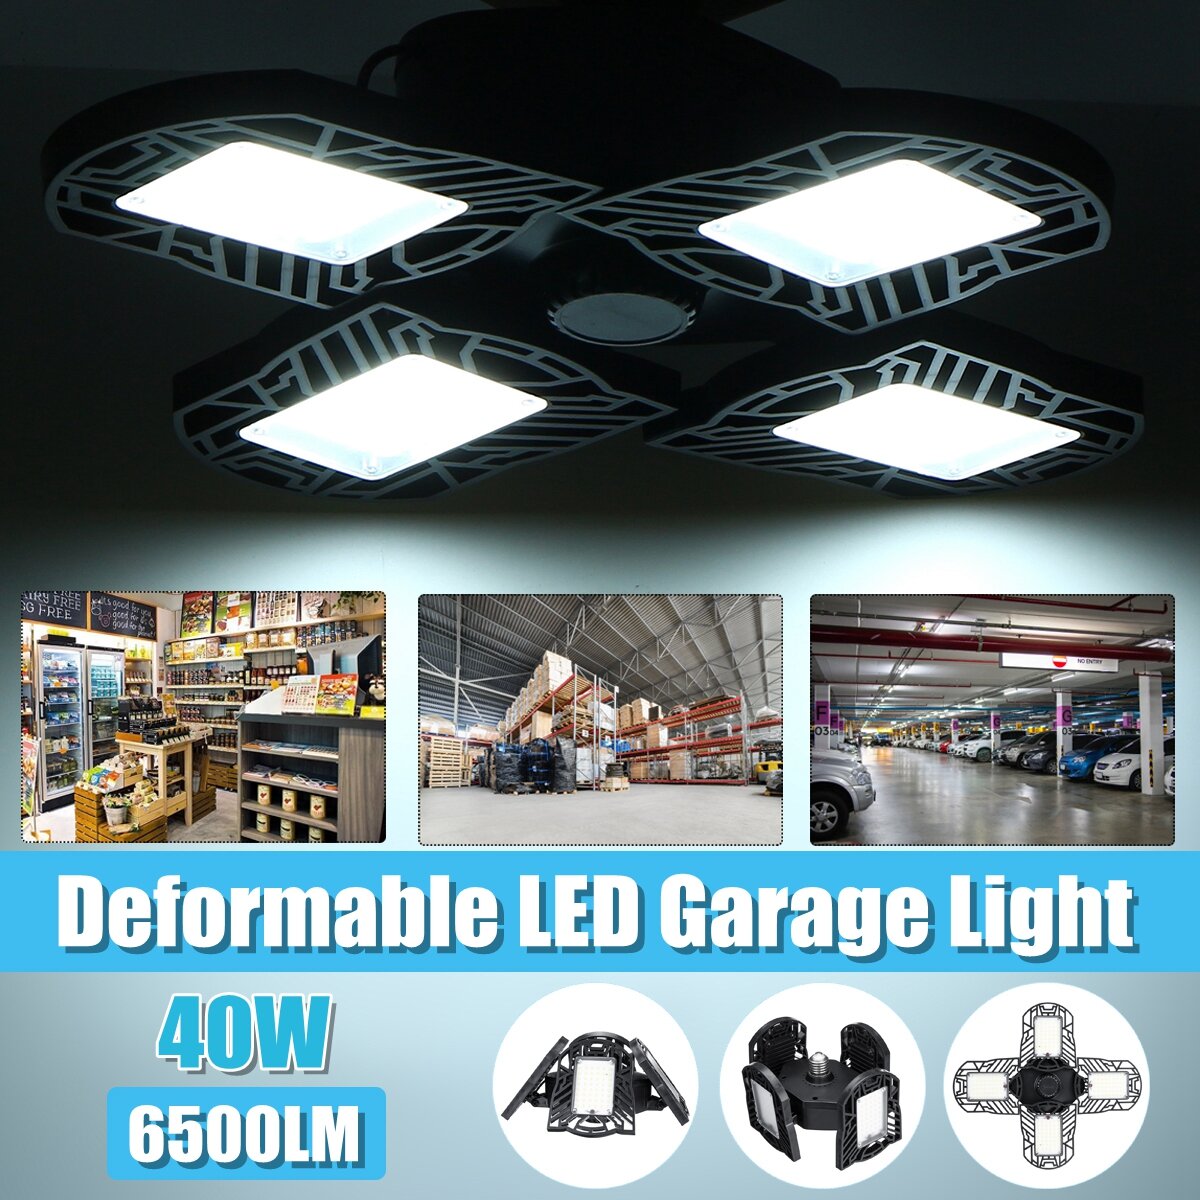 40W E27 LED Garage Light Bulb Deformable Ceiling Fixture Lights Shop Workshop Lamp 85-265V